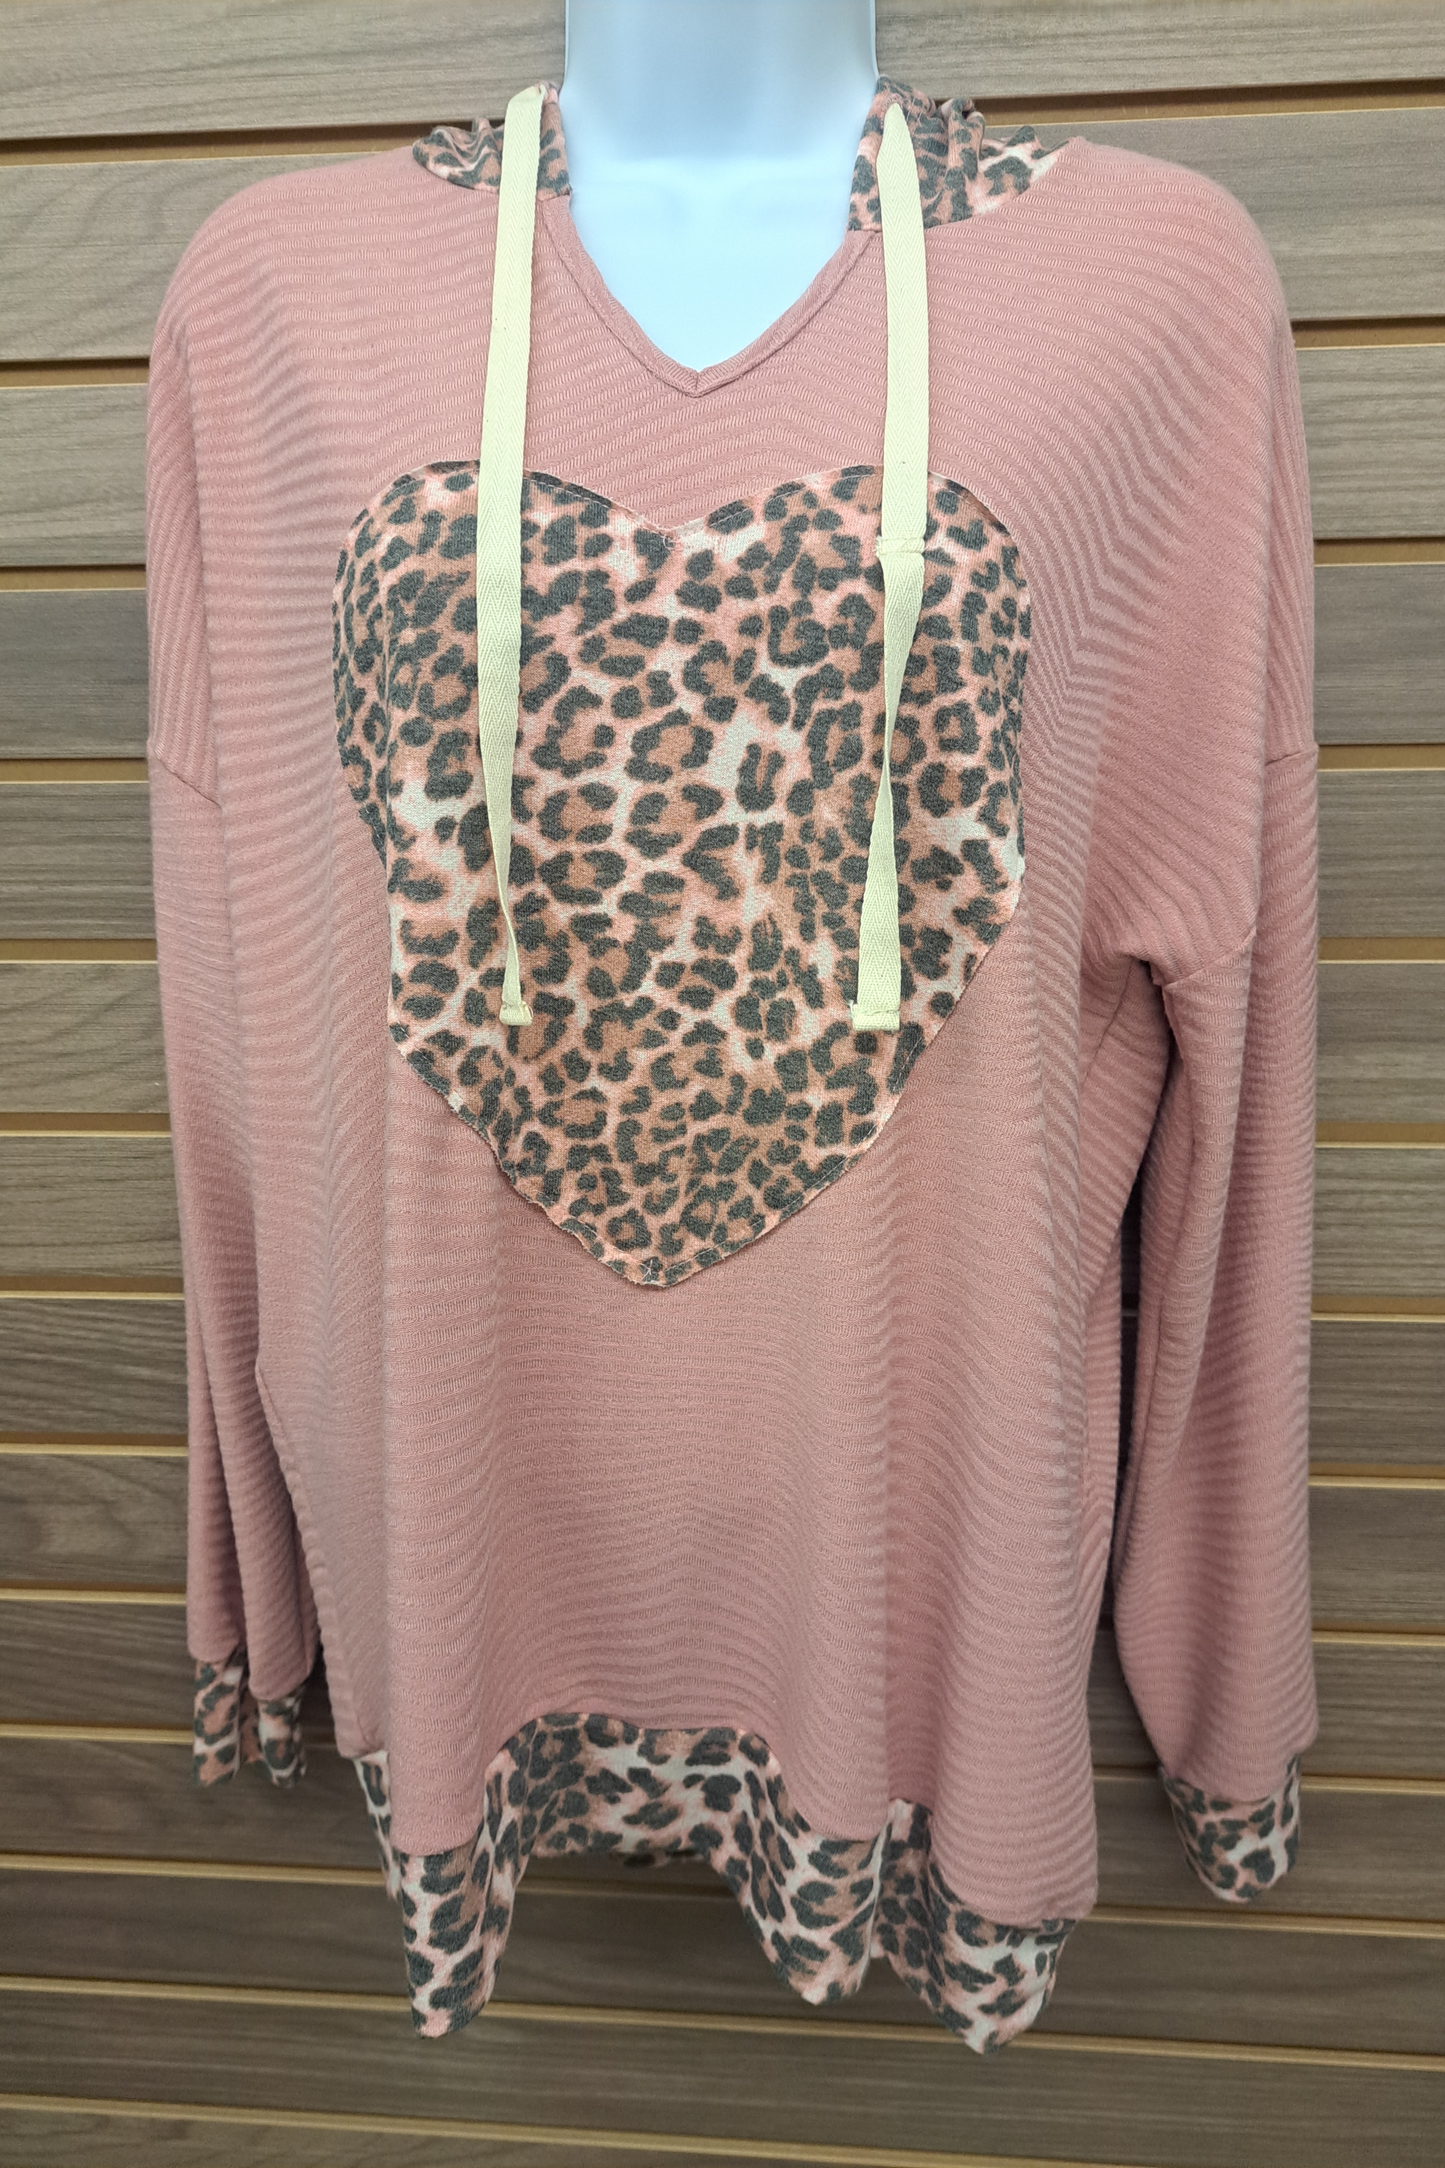 Leopard heart hoodie